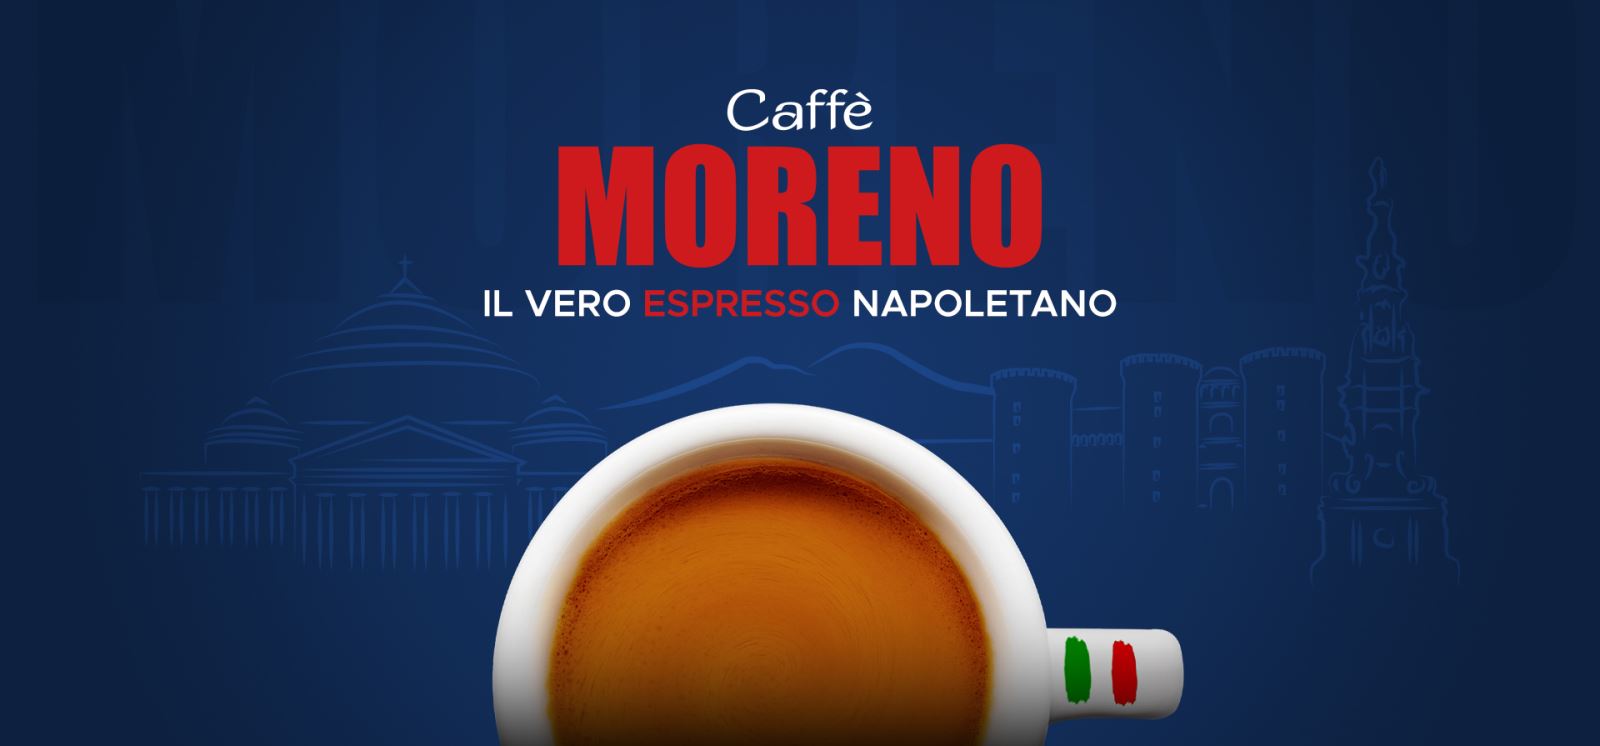 مورنو،Moreno،قهوه مورنو، Caffe Moreno، Moreno coffee، قهوه مورنو اورجینال در شیراز،قهوه مارک مورنو،قهوه مورنو اصل،فروش قهوه مورنو در شیراز،فروش قهوه مارک مورنو